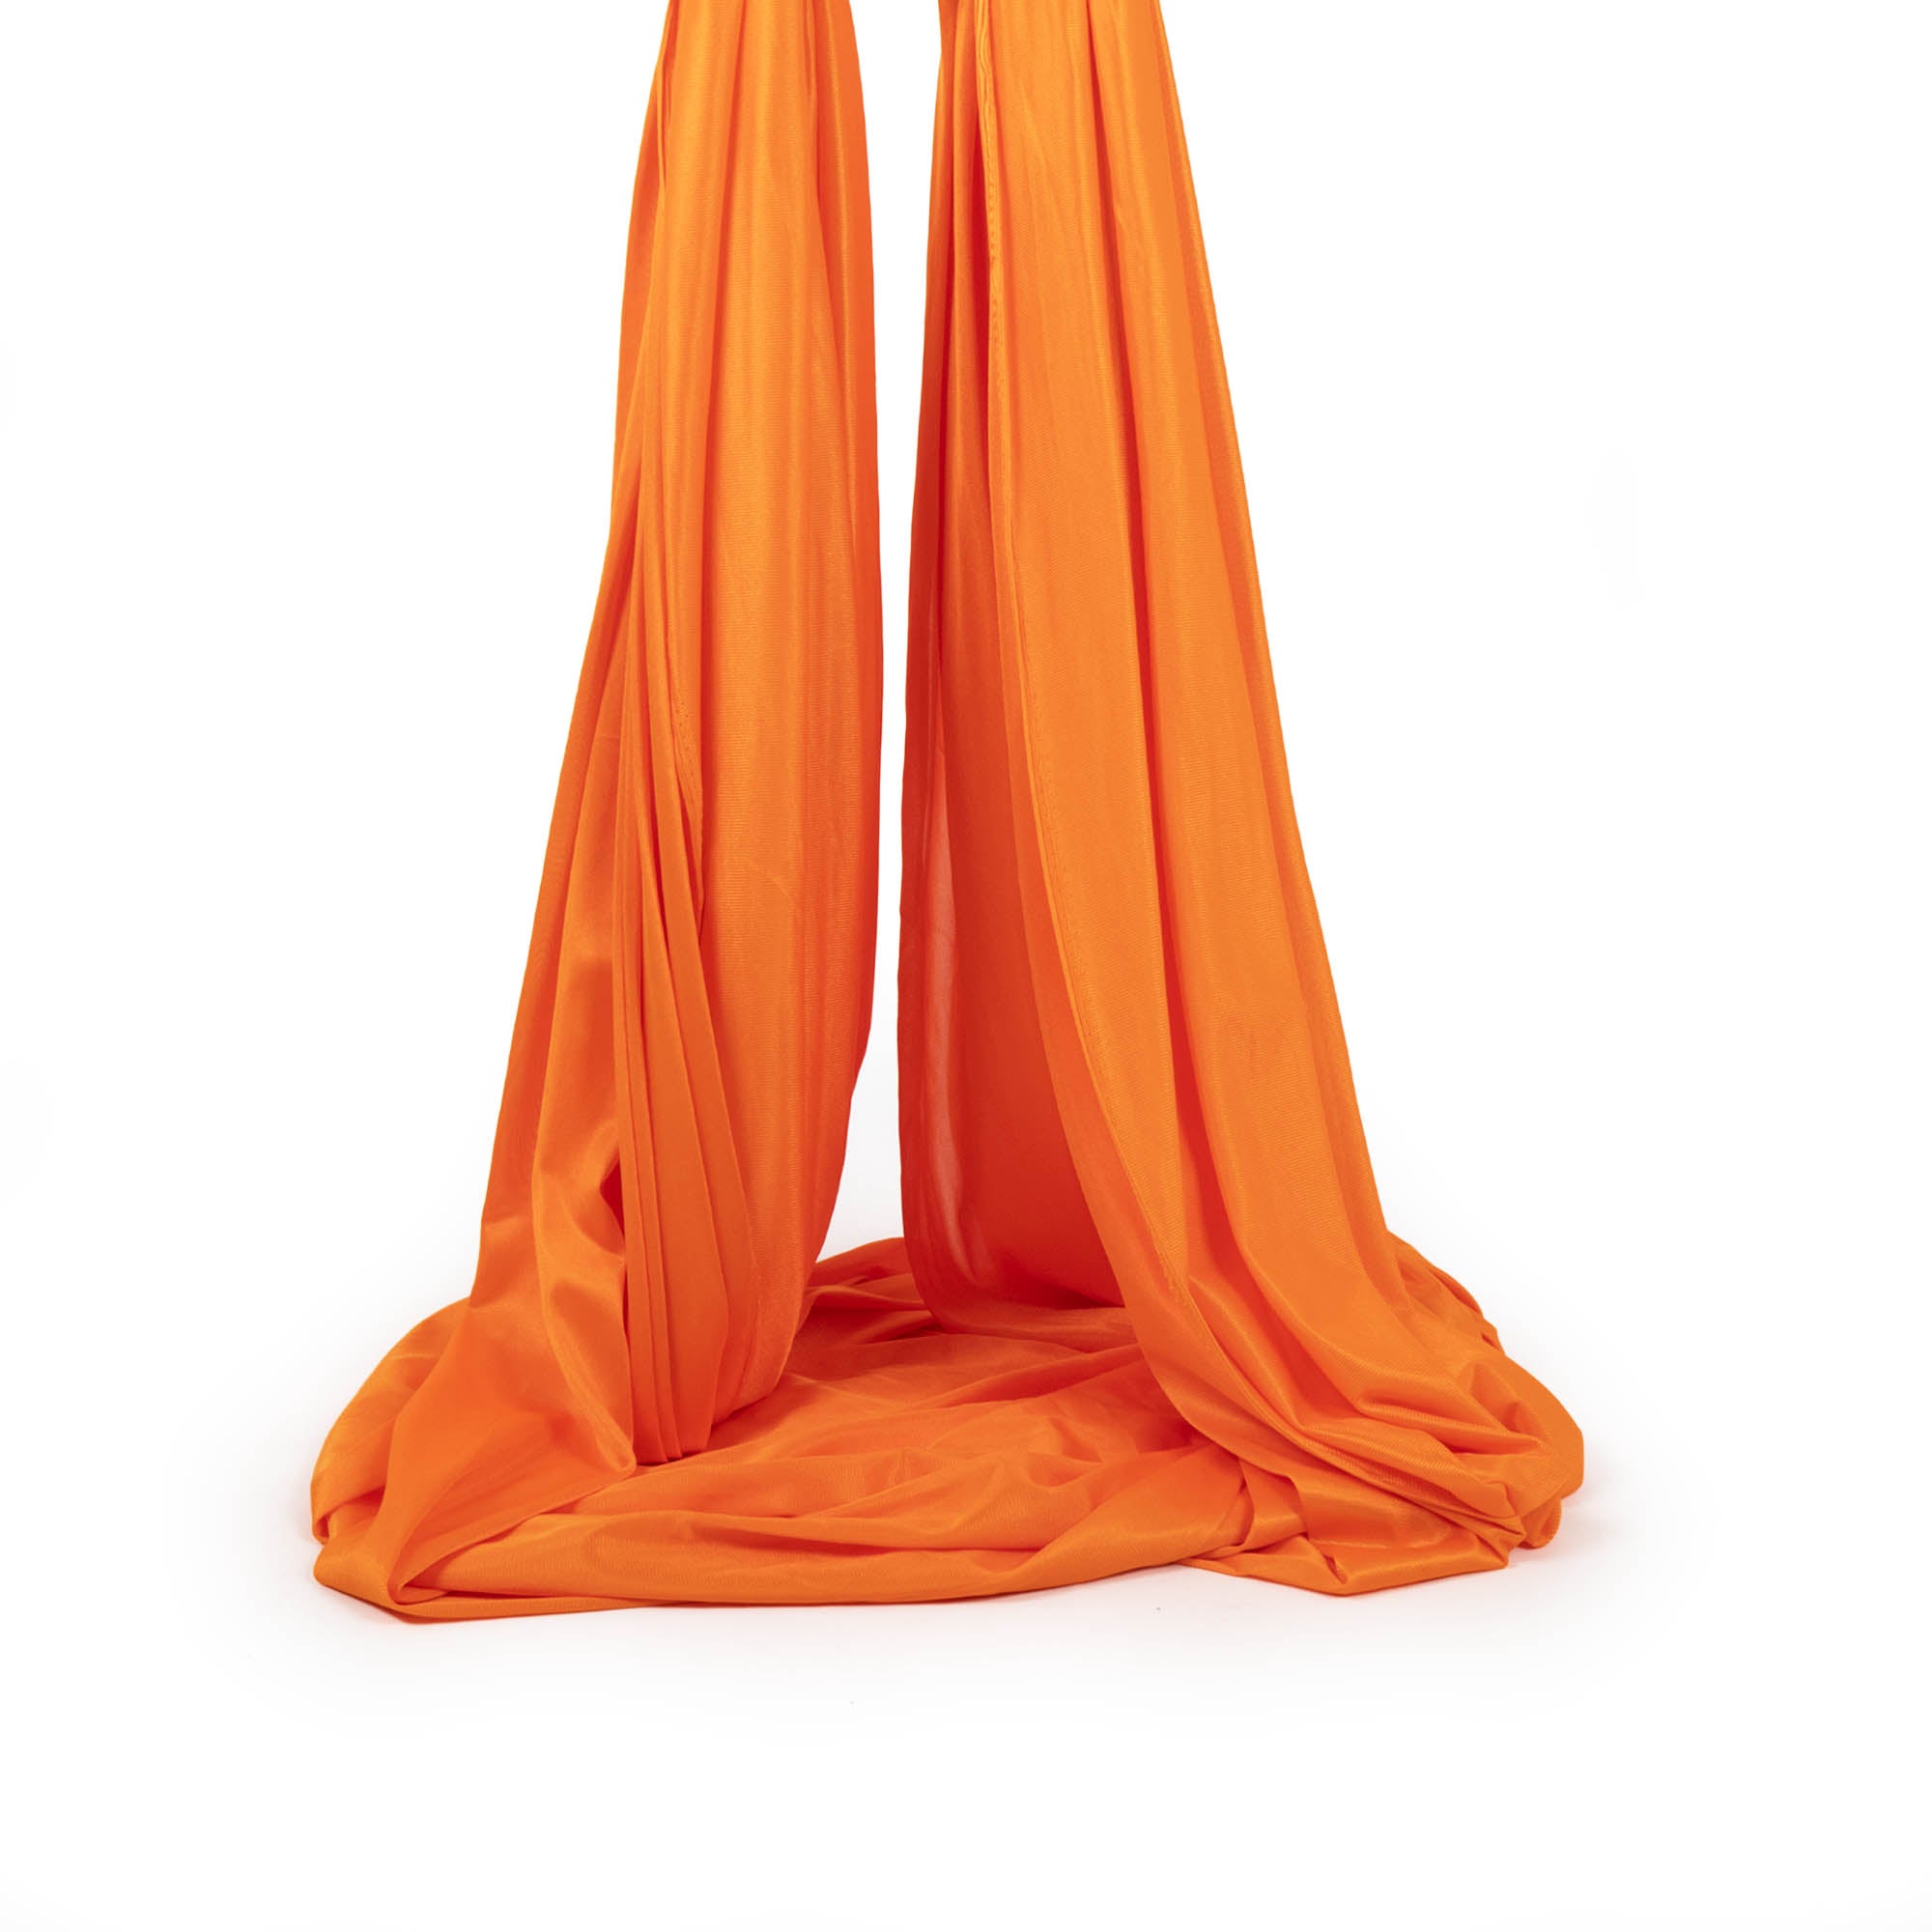 Orange yoga hammock piled up